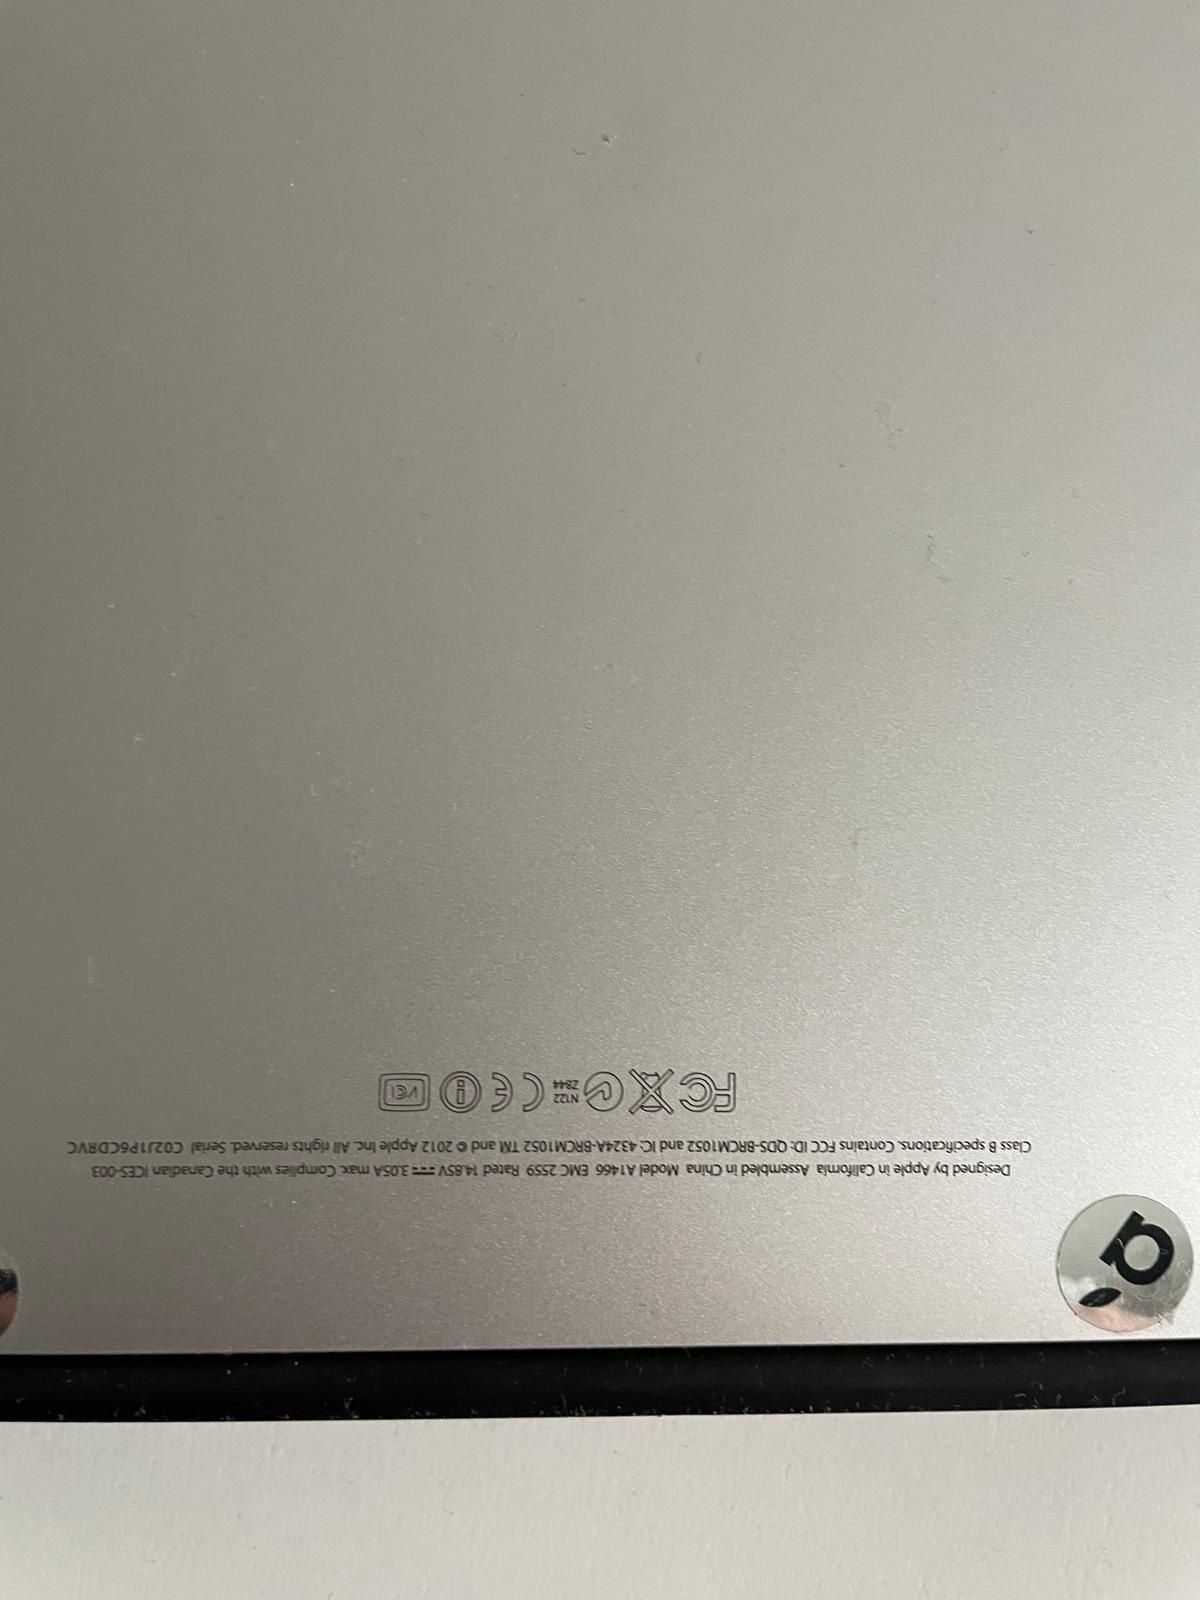 MacBook Air (13-inch, Mid 2012)
Procesor 1,8 GHz Dwurdzeniowy procesor